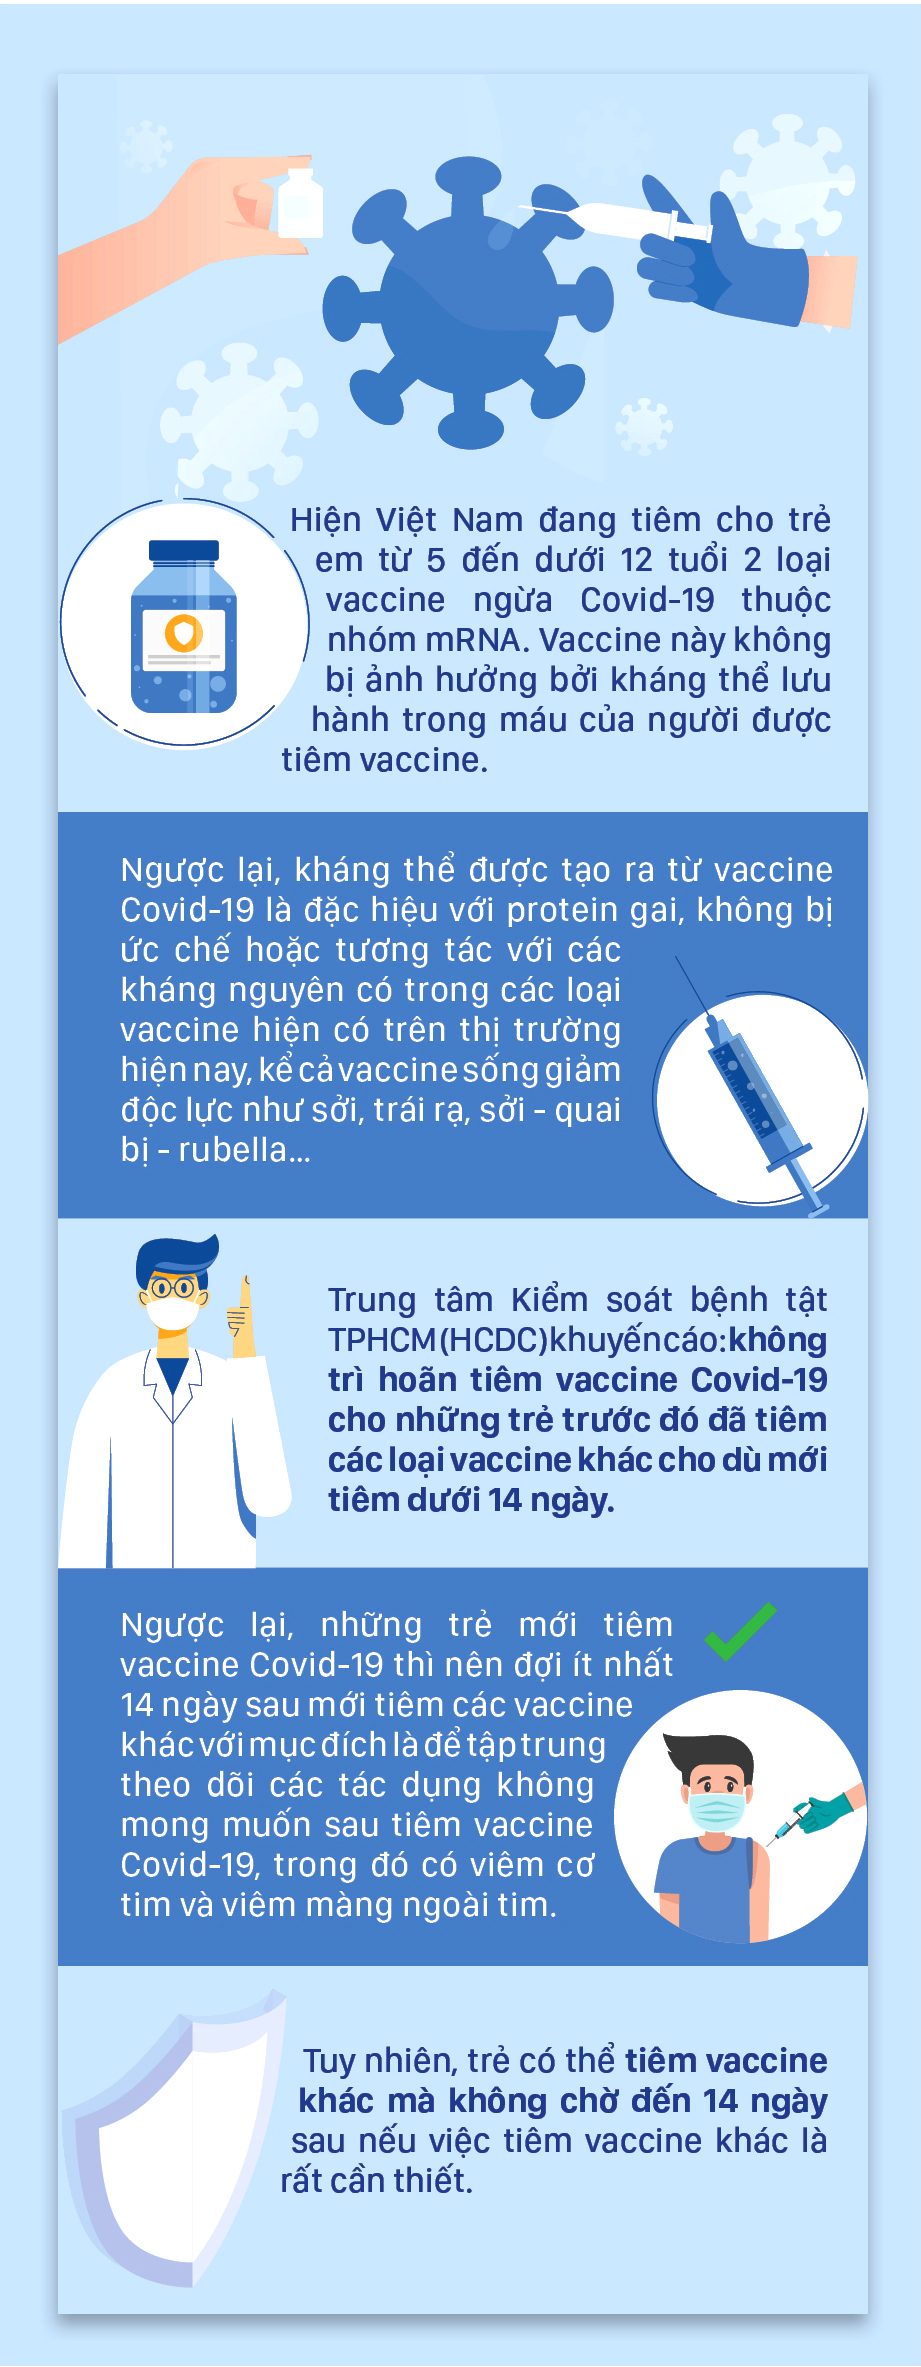 Trẻ vừa tiêm các loại vaccine khác có tiêm vaccine Covid-19 được không? ảnh 1